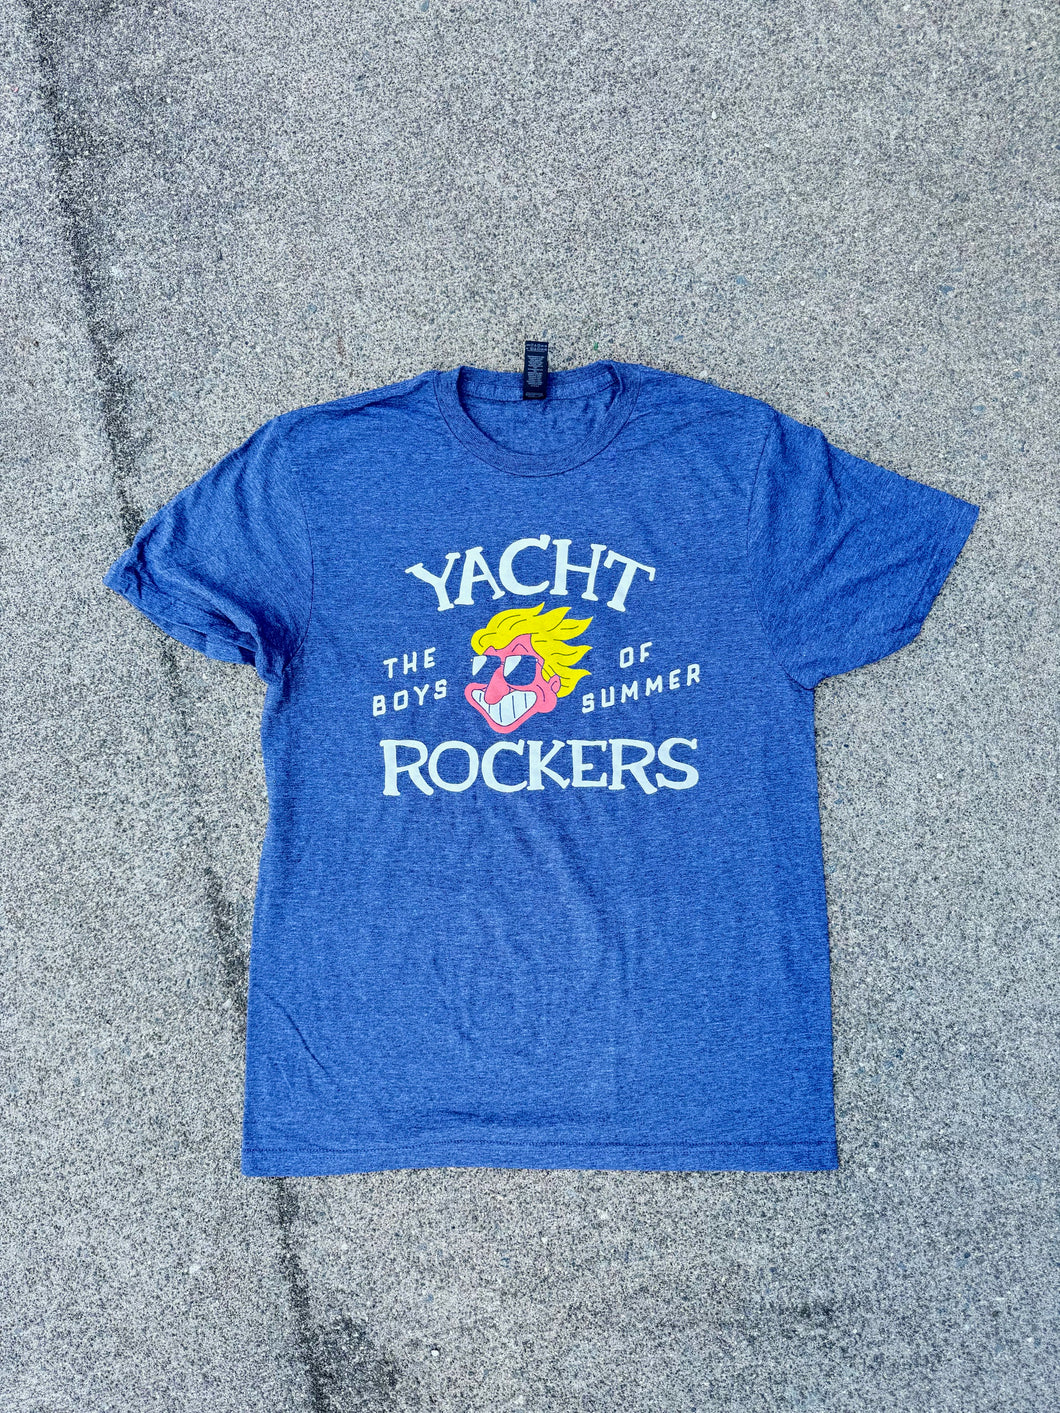 Yacht Rockers “boys of summer” tee